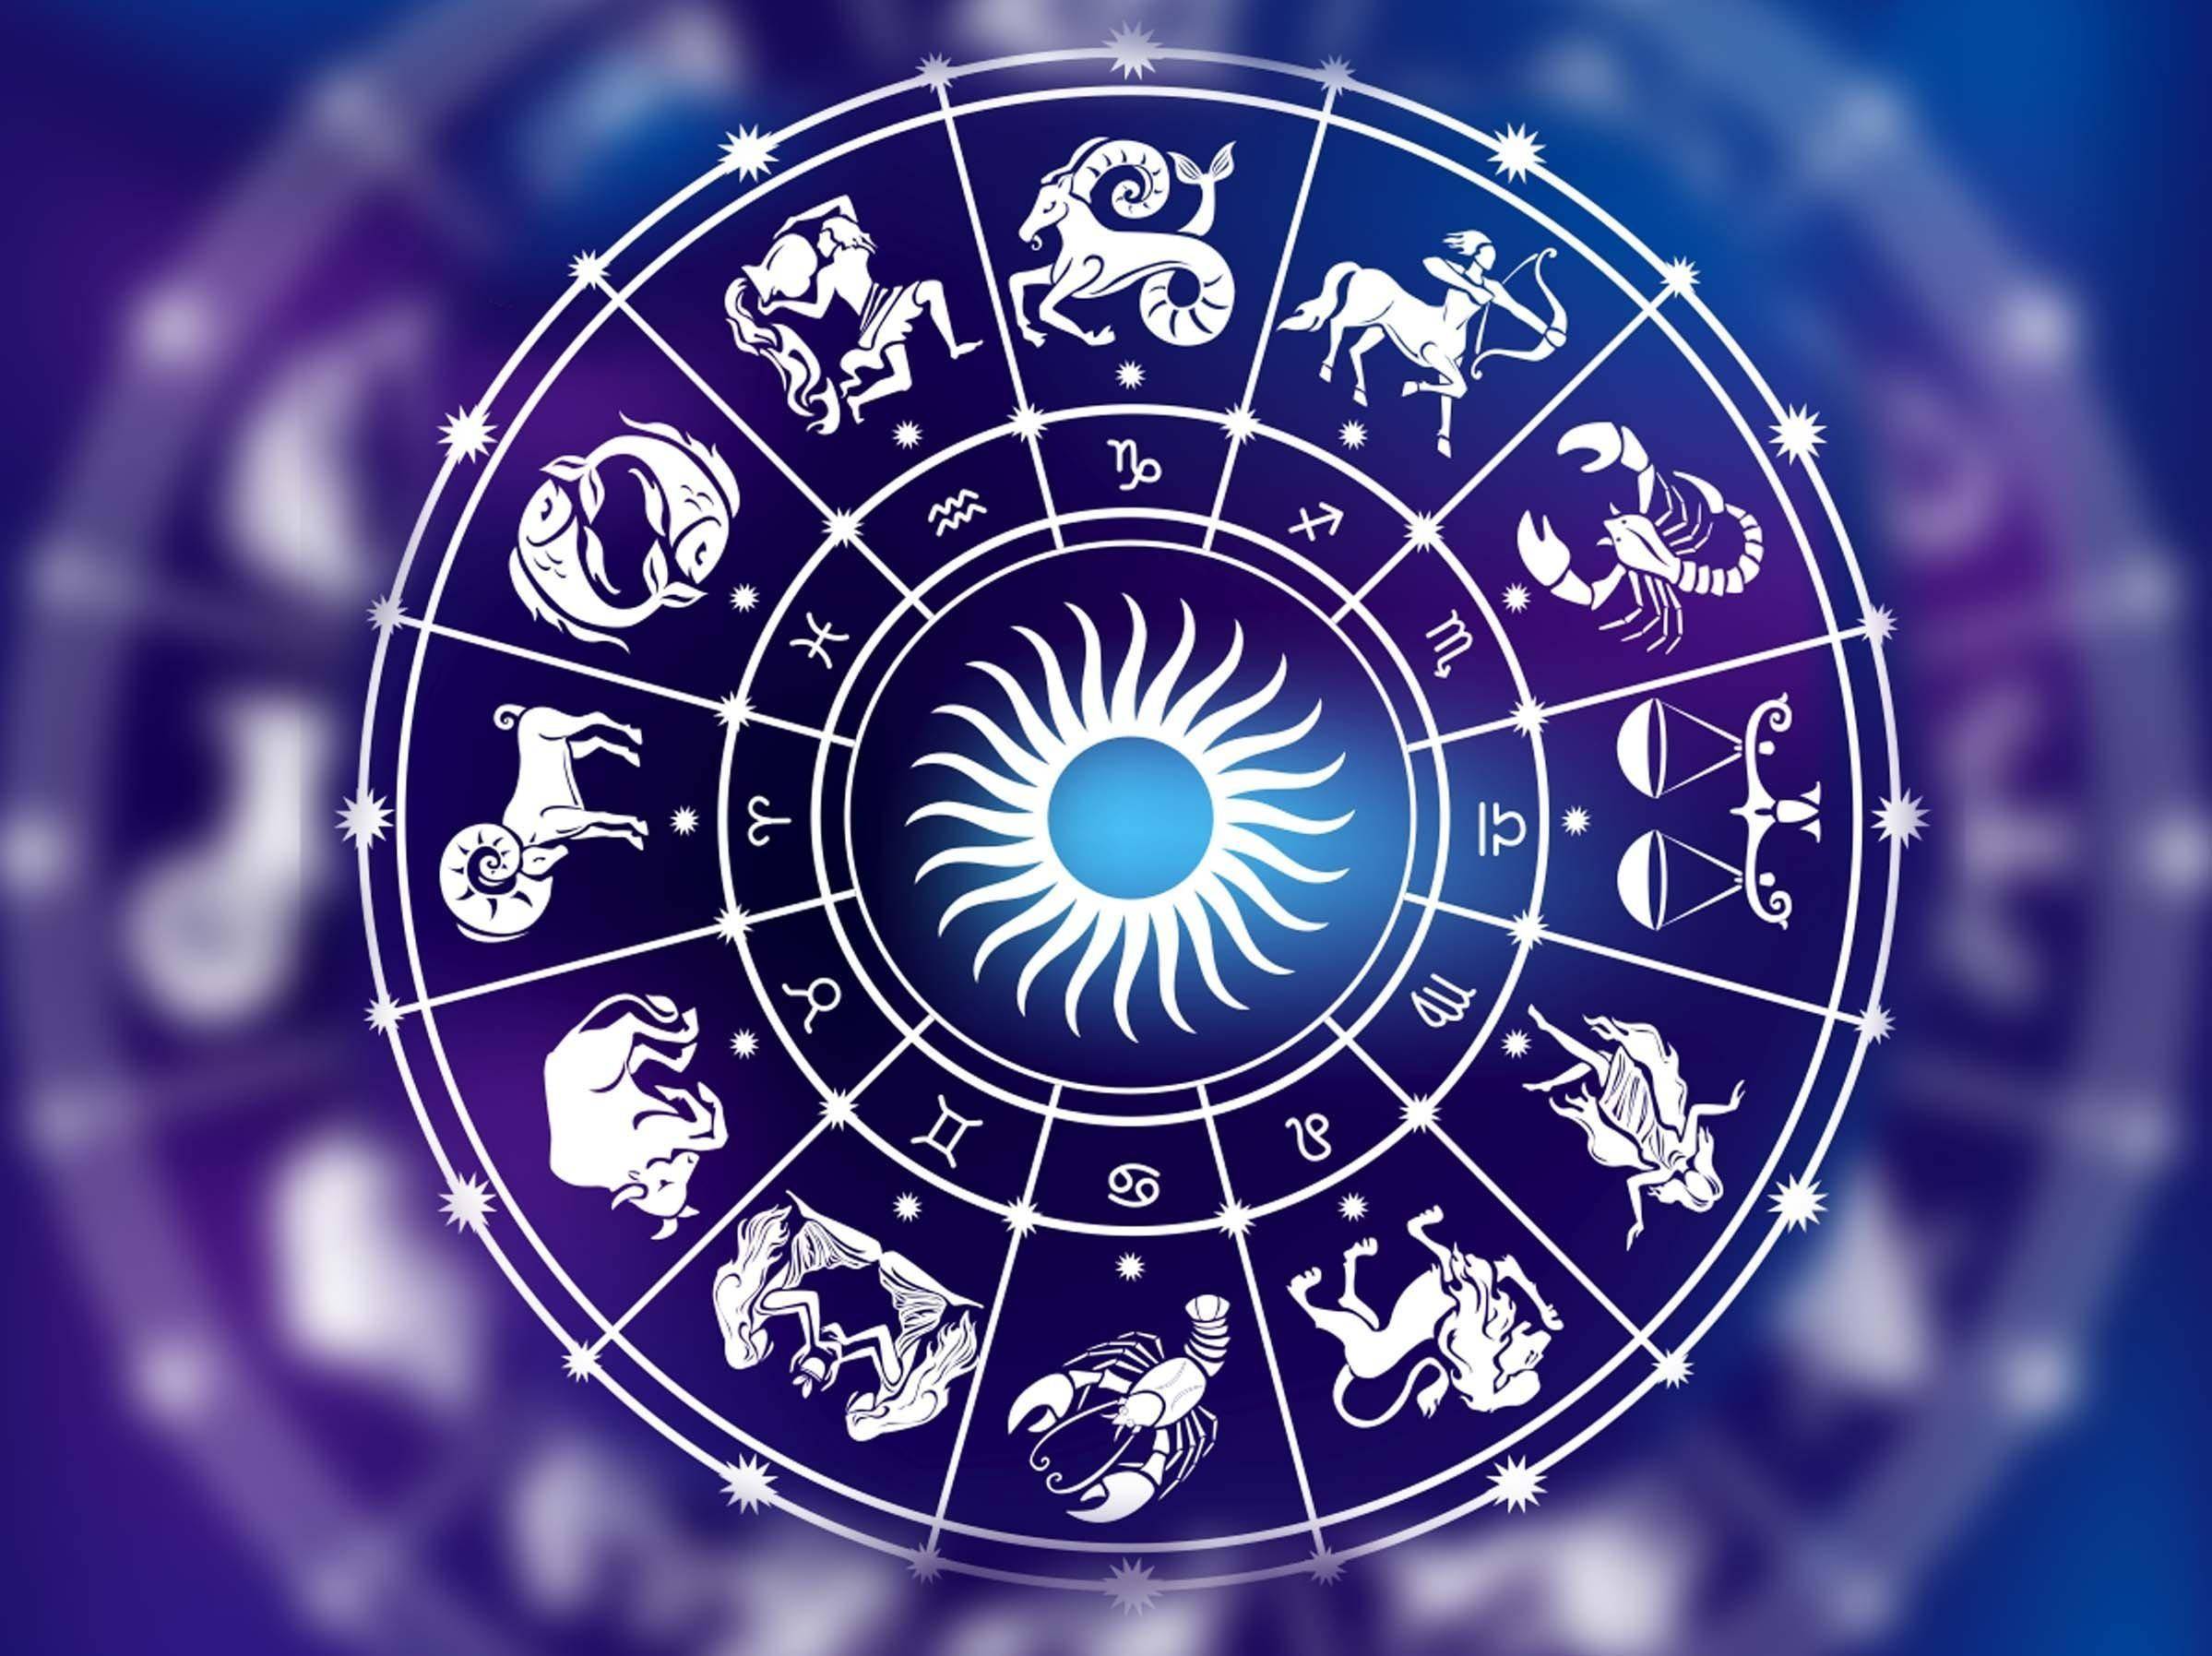 Самые неожиданные изменения: астрологи назвали знаки Зодиака с серьезными переменами в жизни до конца октября